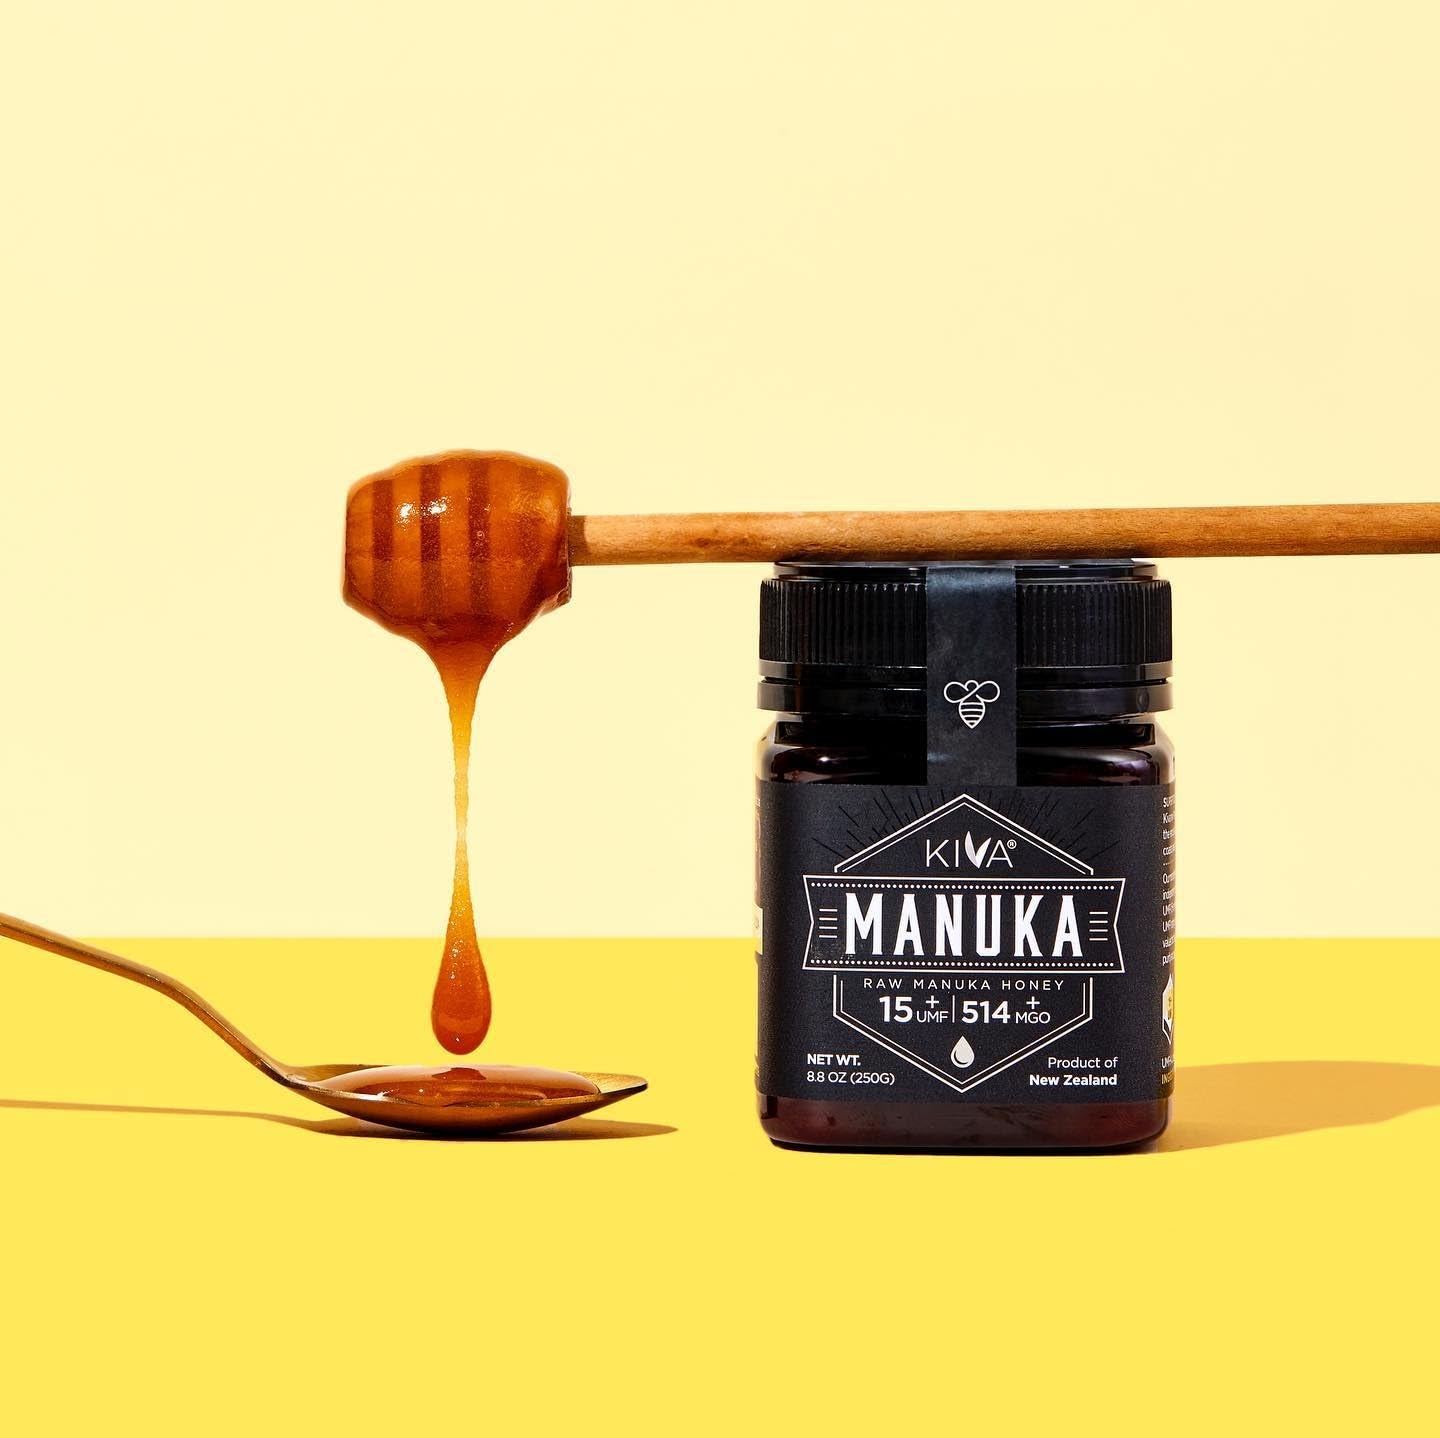 Kiva Raw Manuka Honey, Certified UMF 15+ | MGO 514+ | 100% Pure Genuine New Zealand (8.8Oz/250G Bottle) | Non-Gmo | Traceable | UMF & MGO Certified